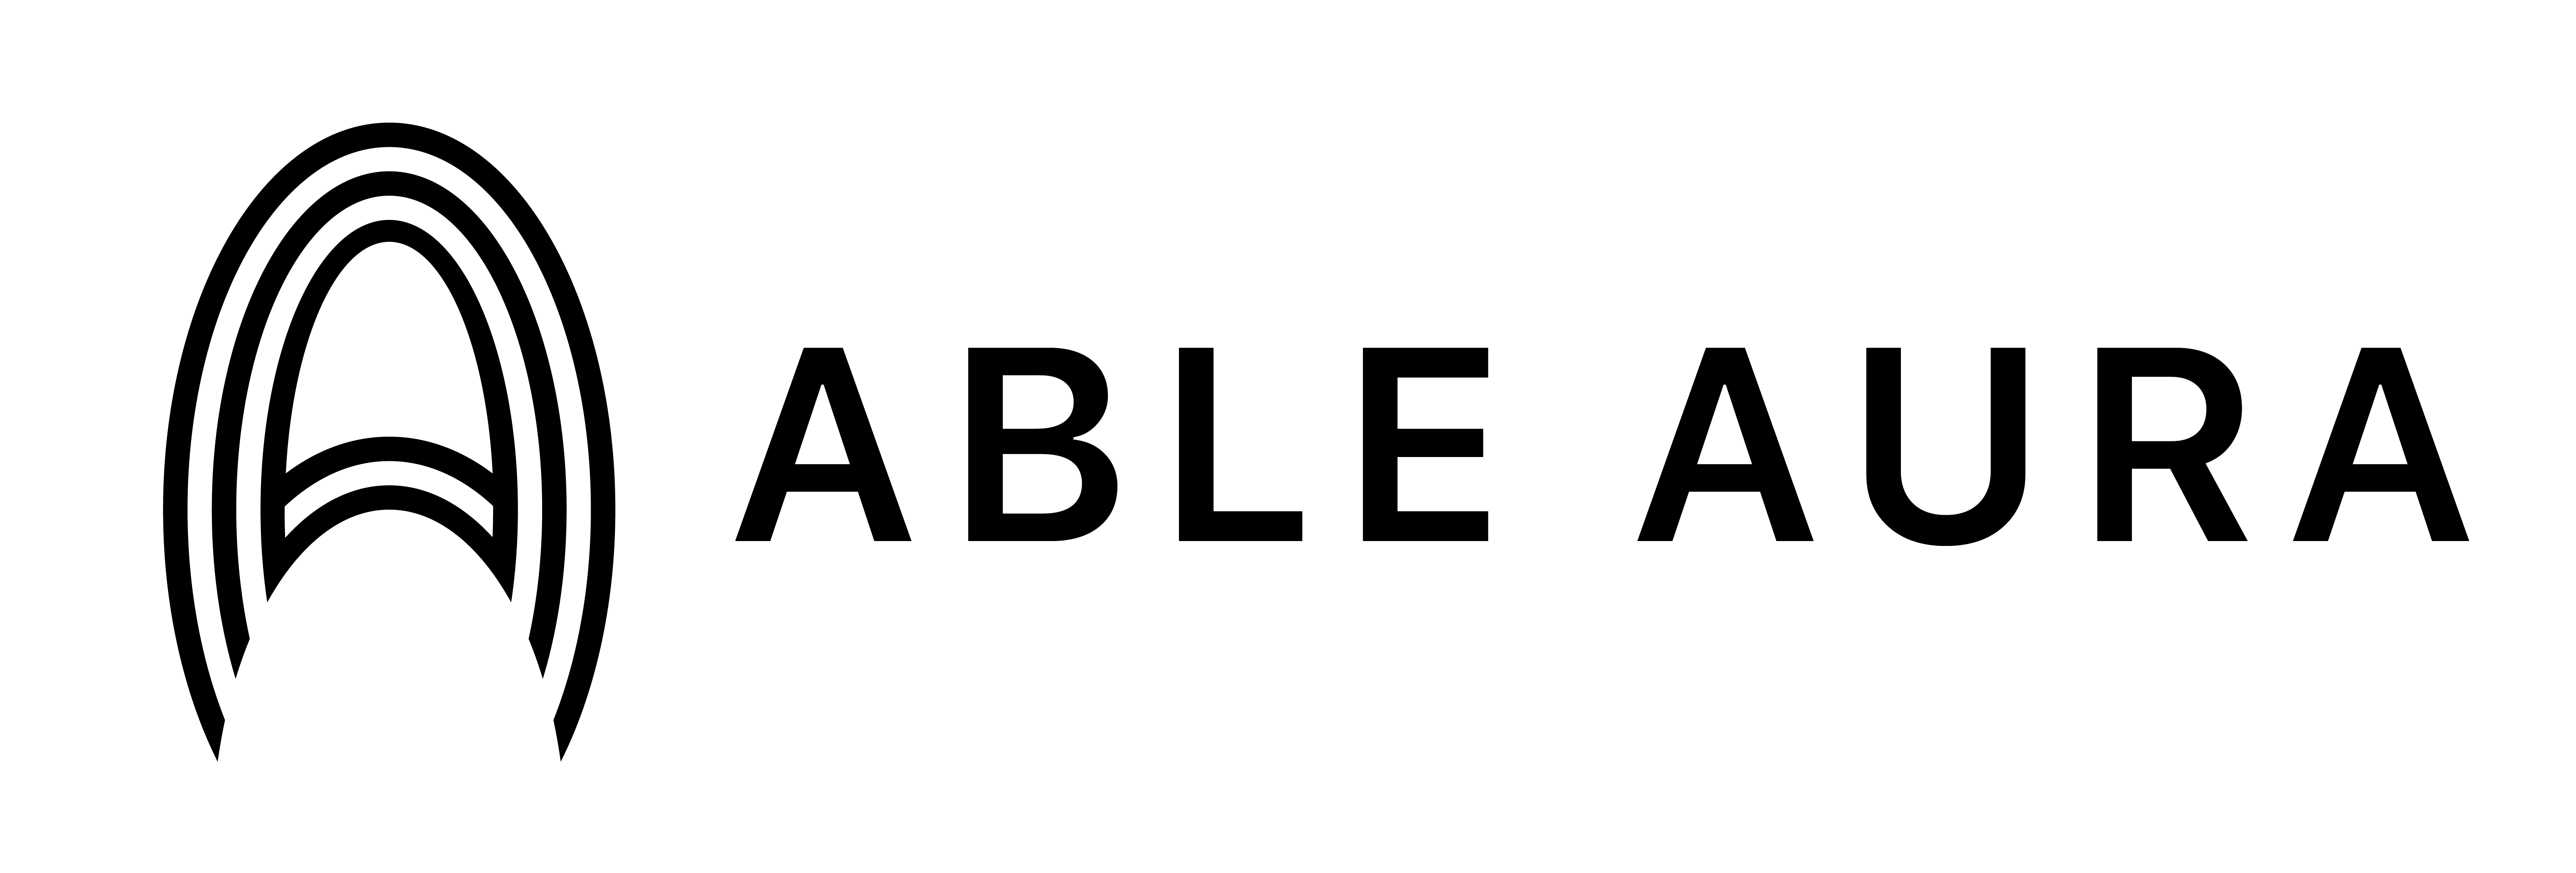 logo: Able Aura